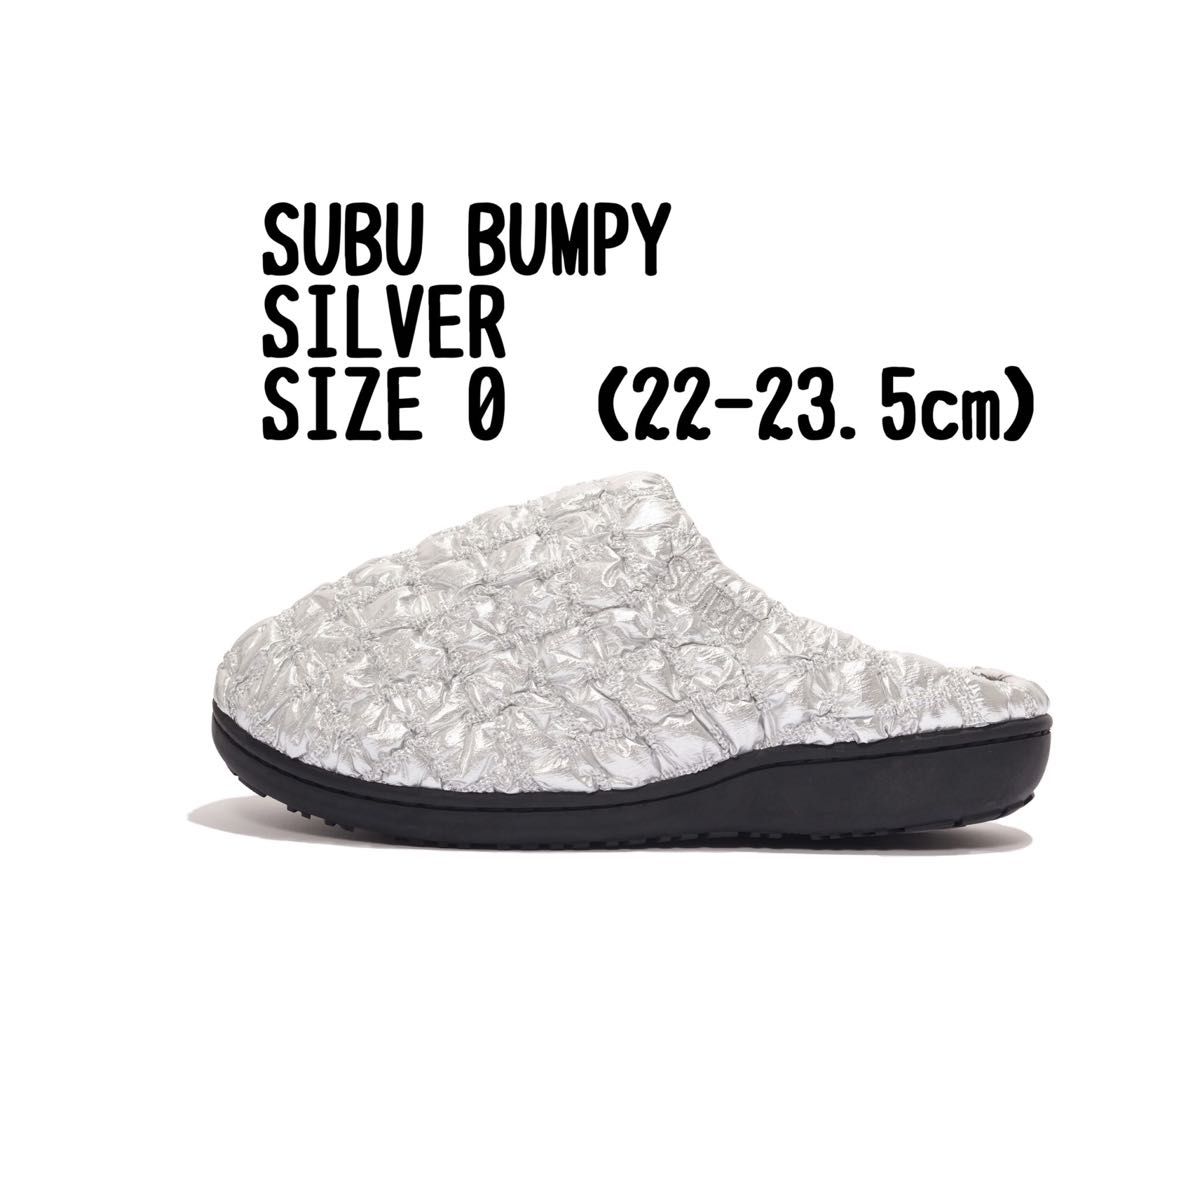 SUBU BUMPY SILVER サイズ1 24-25.5cm-